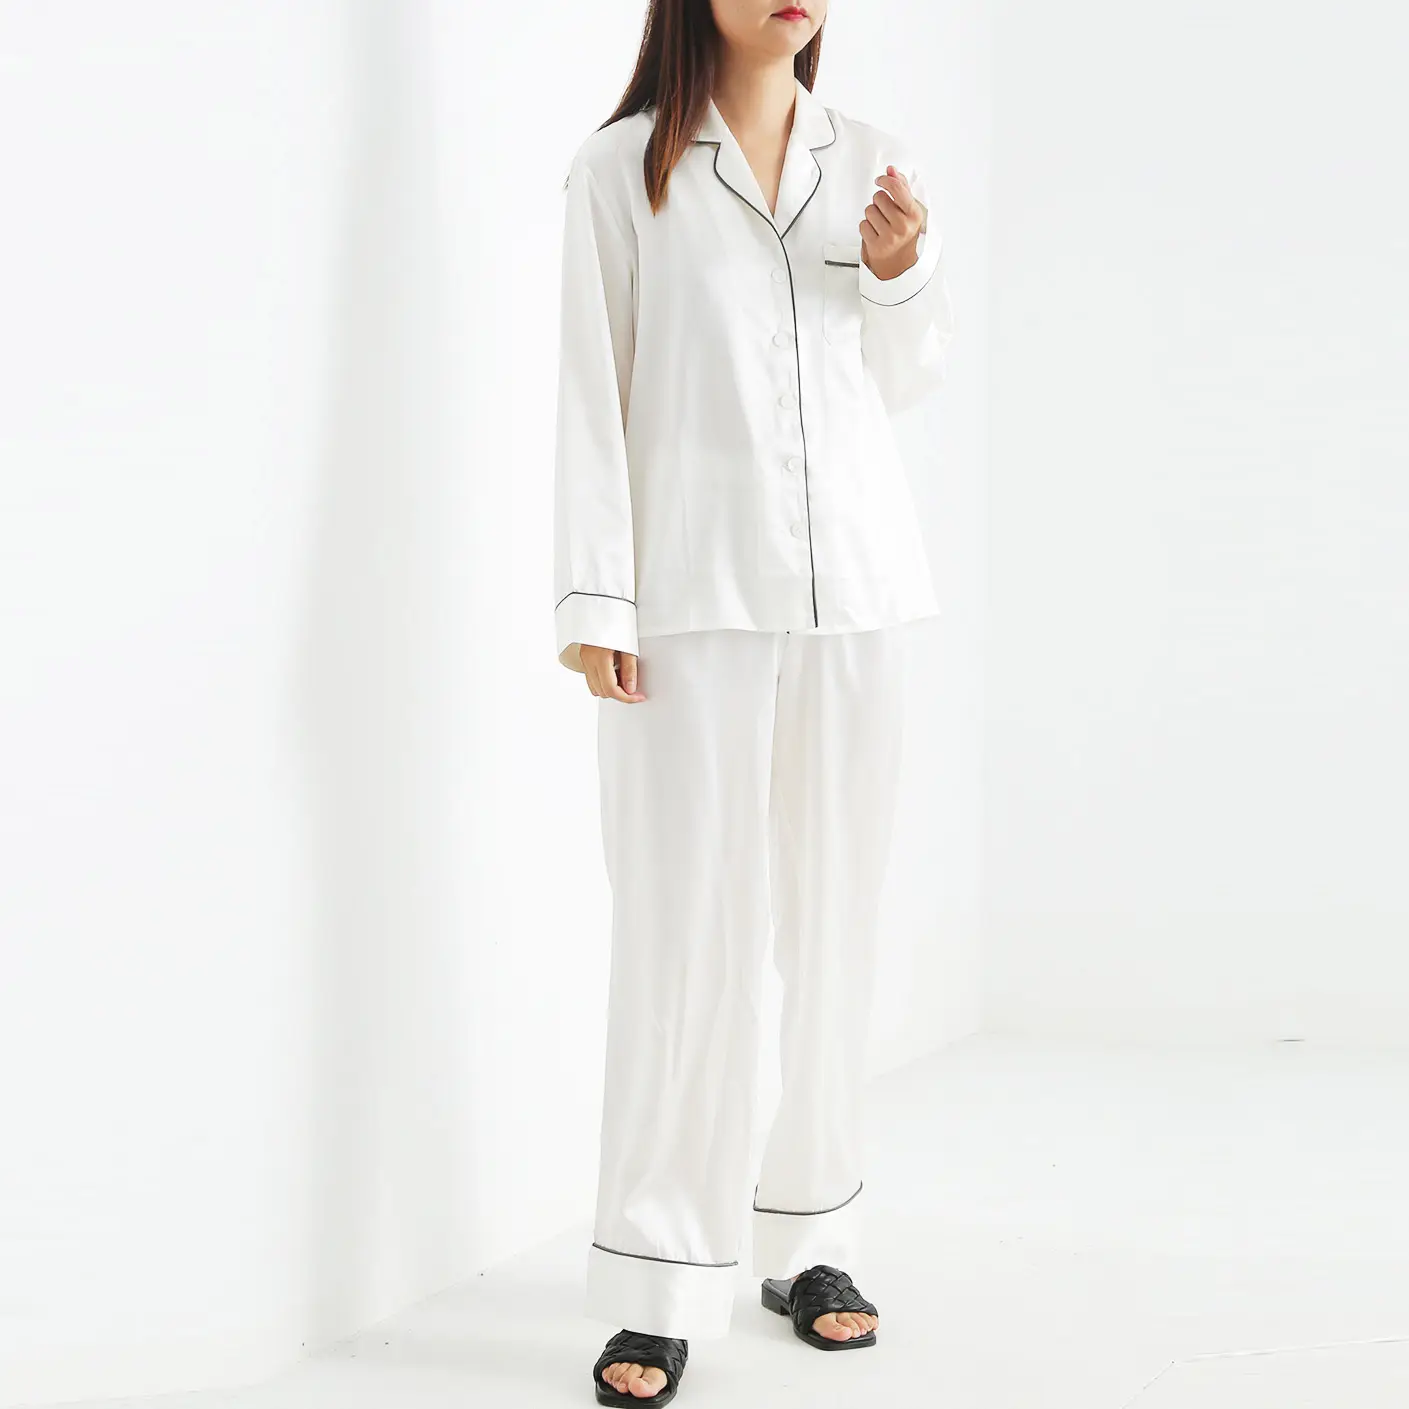 100% रेशम पाजामा महिला आरामदायक कपड़े पुष्प साटन रेशम लक्जरी nightwear सफेद रेशम पजामा लड़कियों के लिए